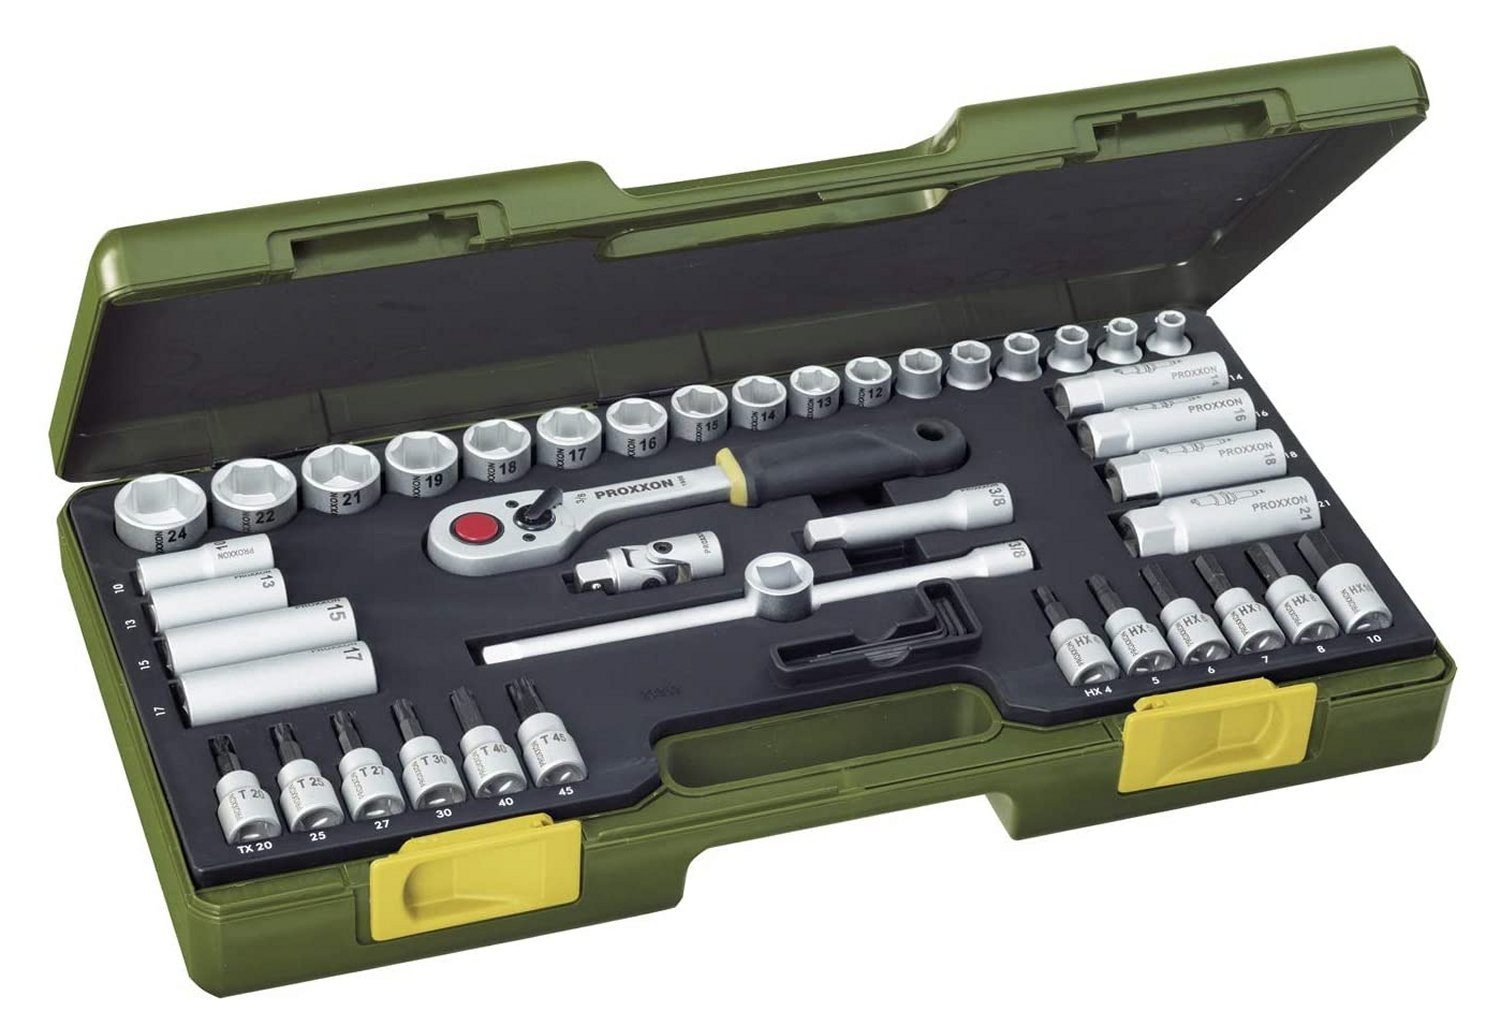 PROXXON INDUSTRIAL Werkzeugset PROXXON 23282 Nusskasten Knarrenkasten Antrieb 10mm (3/8) 47 teilig, (47-St), inkl. Aufbewahrungskoffer | Steckschlüssel